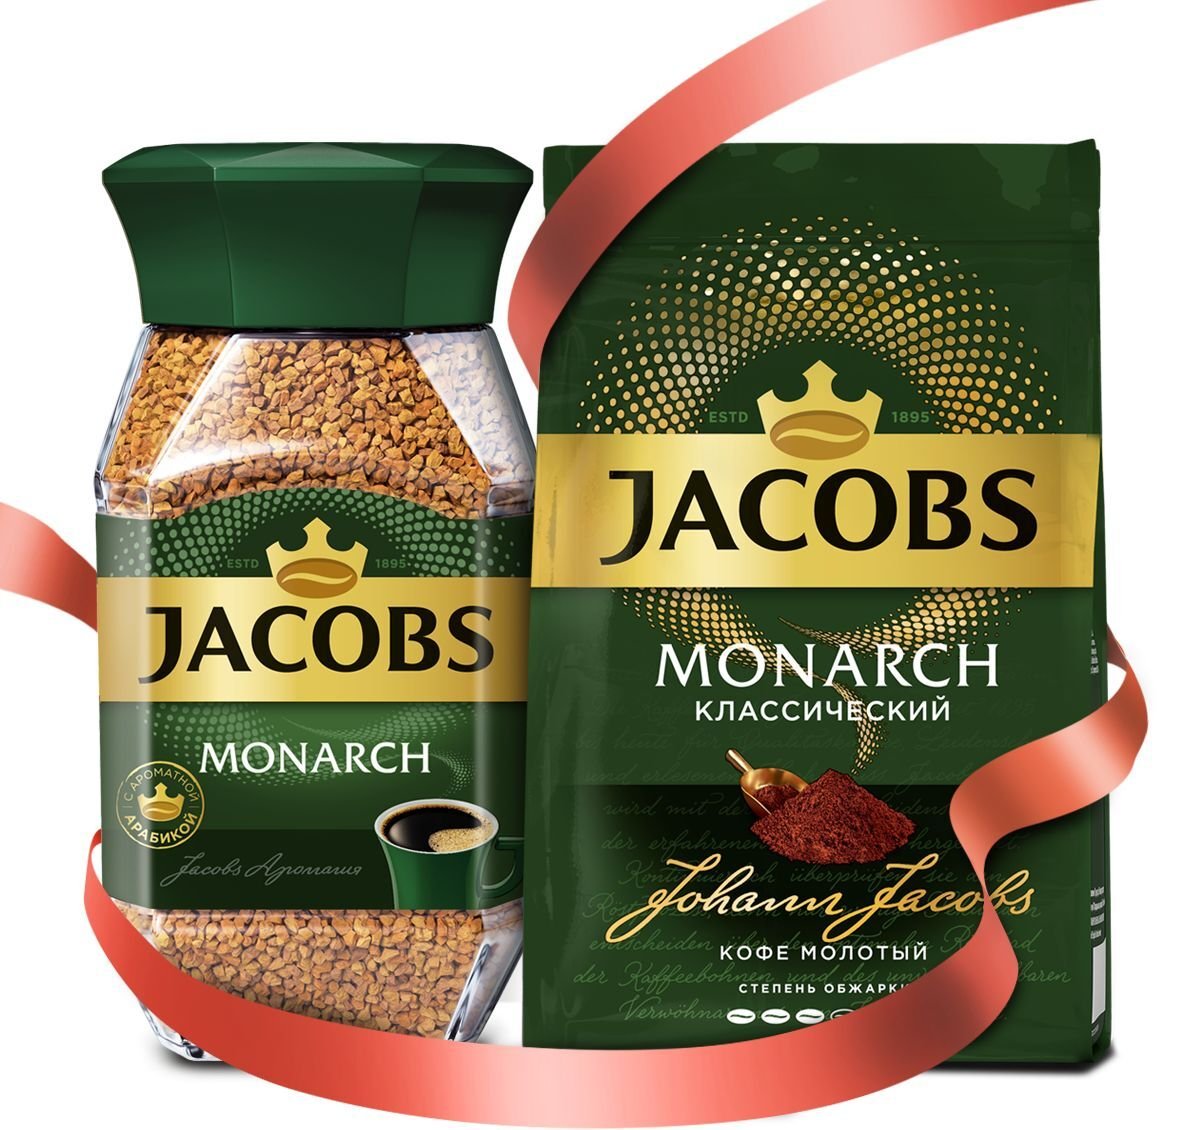 Якобс кофе хорошее кофе. Jacobs Monarch 47,5г. Кофе Якобс Монарх 47,5. Кофе Якобс Монарх 47,5г. Кофе Якобс Монарх 47,5г с/б.